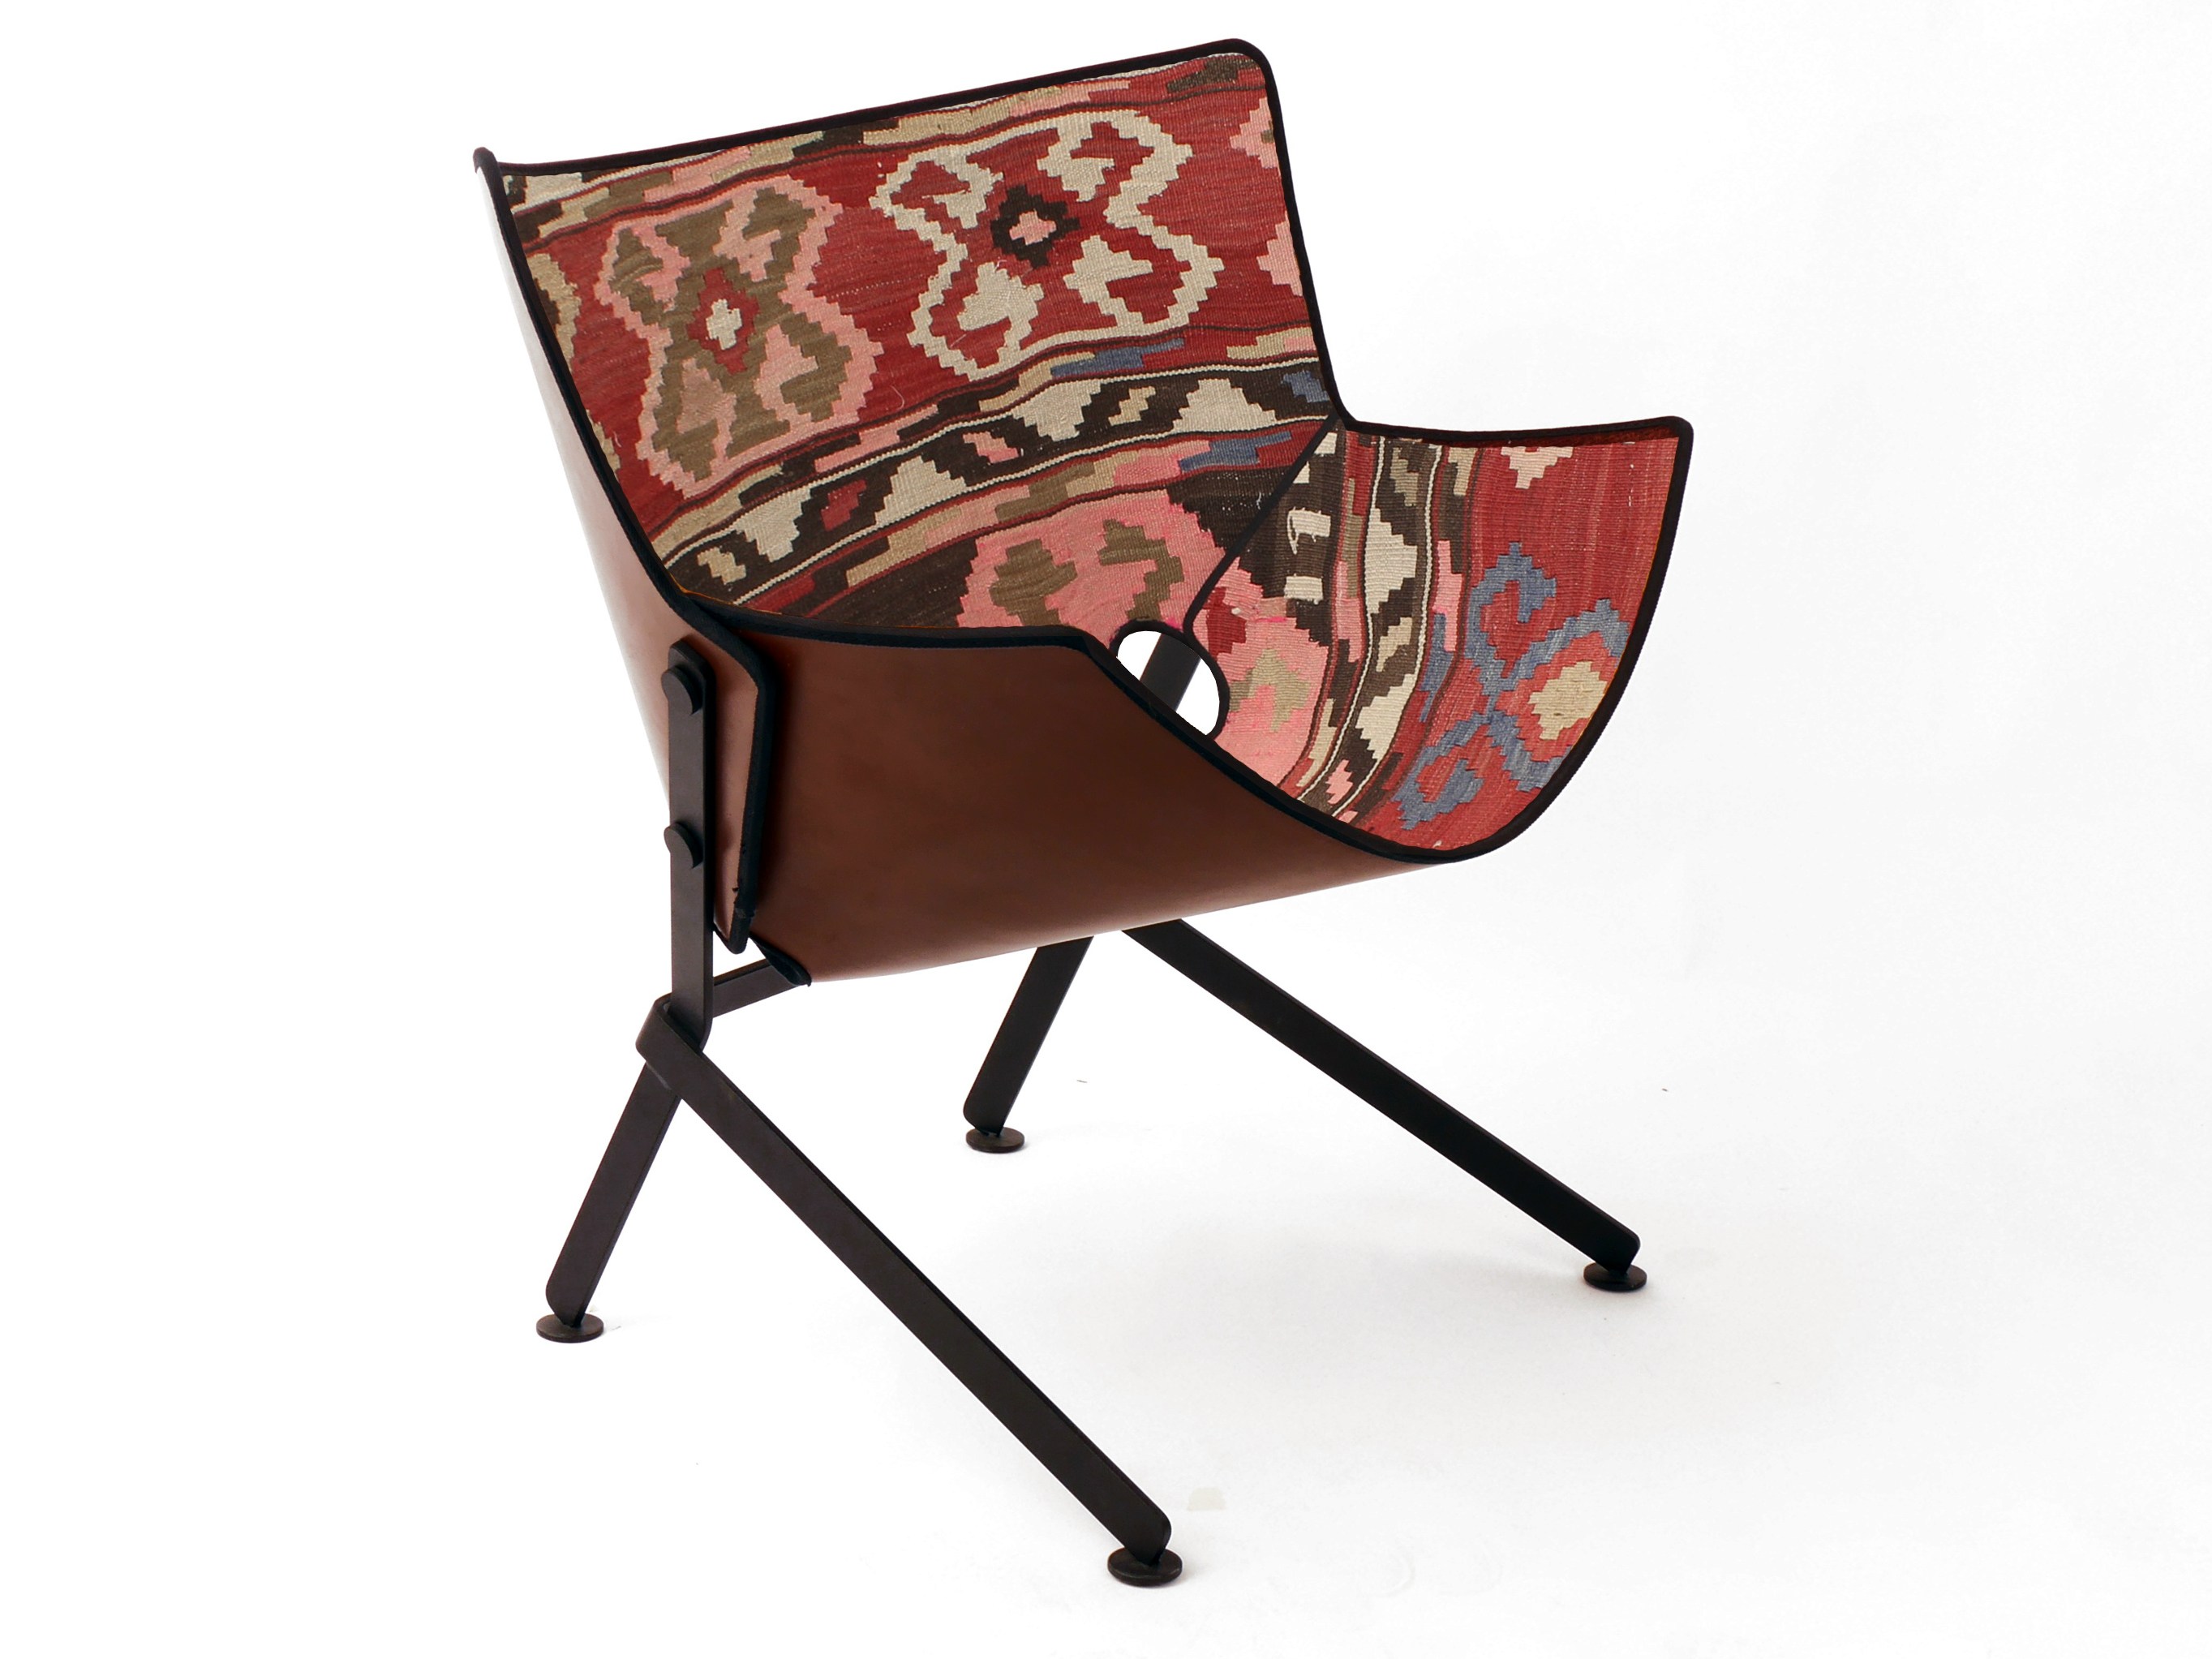 El Santo Libre Lounge Chair by Christophe de la Fontaine for Dante